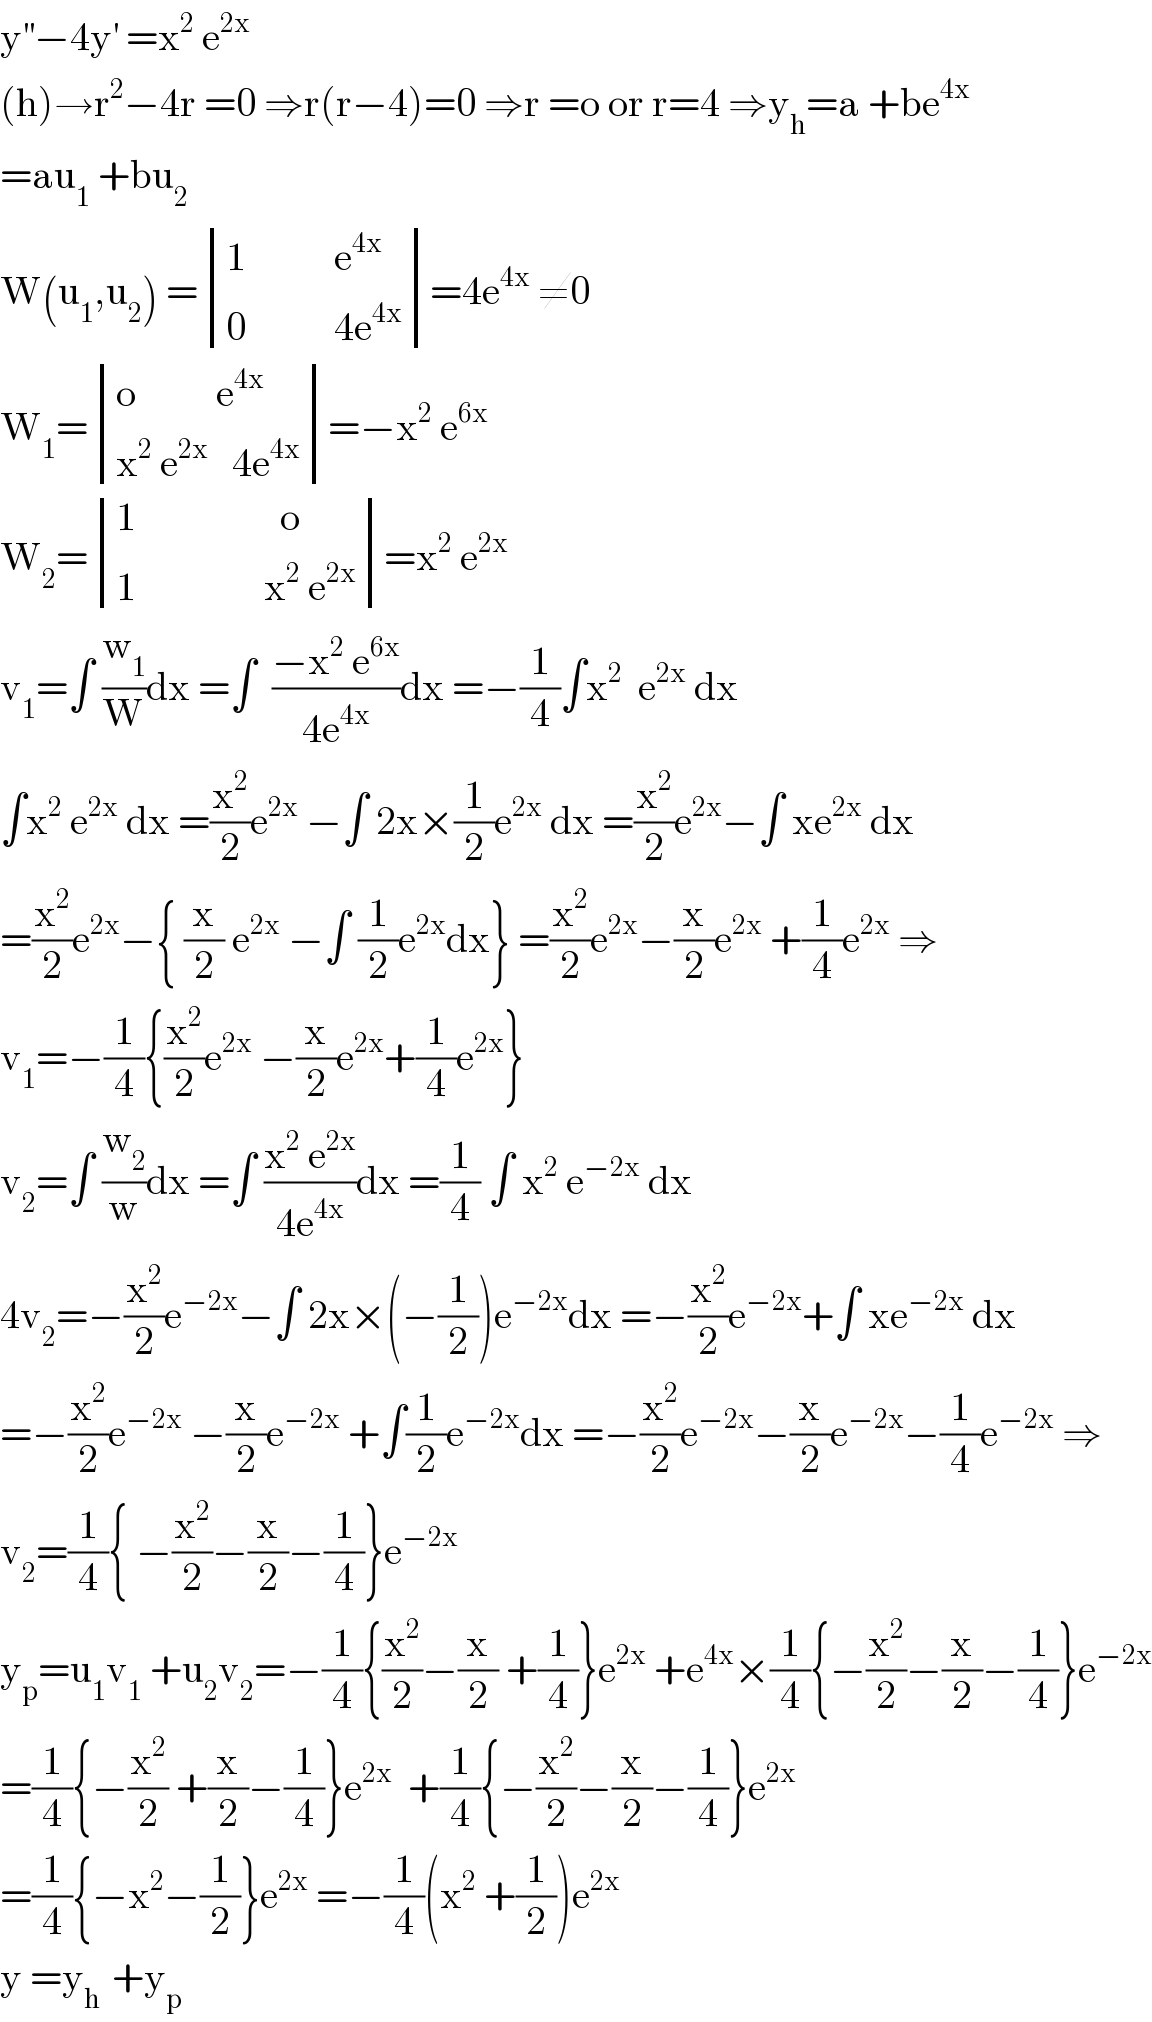 y^(′′) −4y^′  =x^2  e^(2x)   (h)→r^2 −4r =0 ⇒r(r−4)=0 ⇒r =o or r=4 ⇒y_h =a +be^(4x)   =au_1  +bu_2   W(u_1 ,u_2 ) = determinant (((1           e^(4x) )),((0           4e^(4x) )))=4e^(4x)  ≠0  W_1 = determinant (((o          e^(4x) )),((x^2  e^(2x)    4e^(4x) )))=−x^2  e^(6x)   W_2 = determinant (((1                  o)),((1                x^2  e^(2x) )))=x^2  e^(2x)   v_1 =∫ (w_1 /W)dx =∫  ((−x^2  e^(6x) )/(4e^(4x) ))dx =−(1/4)∫x^2   e^(2x)  dx  ∫x^2  e^(2x)  dx =(x^2 /2)e^(2x)  −∫ 2x×(1/2)e^(2x)  dx =(x^2 /2)e^(2x) −∫ xe^(2x)  dx  =(x^2 /2)e^(2x) −{ (x/2) e^(2x)  −∫ (1/2)e^(2x) dx} =(x^2 /2)e^(2x) −(x/2)e^(2x)  +(1/4)e^(2x)  ⇒  v_1 =−(1/4){(x^2 /2)e^(2x)  −(x/2)e^(2x) +(1/4)e^(2x) }  v_2 =∫ (w_2 /w)dx =∫ ((x^2  e^(2x) )/(4e^(4x) ))dx =(1/4) ∫ x^2  e^(−2x)  dx  4v_2 =−(x^2 /2)e^(−2x) −∫ 2x×(−(1/2))e^(−2x) dx =−(x^2 /2)e^(−2x) +∫ xe^(−2x)  dx  =−(x^2 /2)e^(−2x)  −(x/2)e^(−2x)  +∫(1/2)e^(−2x) dx =−(x^2 /2)e^(−2x) −(x/2)e^(−2x) −(1/4)e^(−2x)  ⇒  v_2 =(1/4){ −(x^2 /2)−(x/2)−(1/4)}e^(−2x)   y_p =u_1 v_1  +u_2 v_2 =−(1/4){(x^2 /2)−(x/2) +(1/4)}e^(2x)  +e^(4x) ×(1/4){−(x^2 /2)−(x/2)−(1/4)}e^(−2x)   =(1/4){−(x^2 /2) +(x/2)−(1/4)}e^(2x)   +(1/4){−(x^2 /2)−(x/2)−(1/4)}e^(2x)   =(1/4){−x^2 −(1/2)}e^(2x)  =−(1/4)(x^2  +(1/2))e^(2x)   y =y_(h )  +y_p   